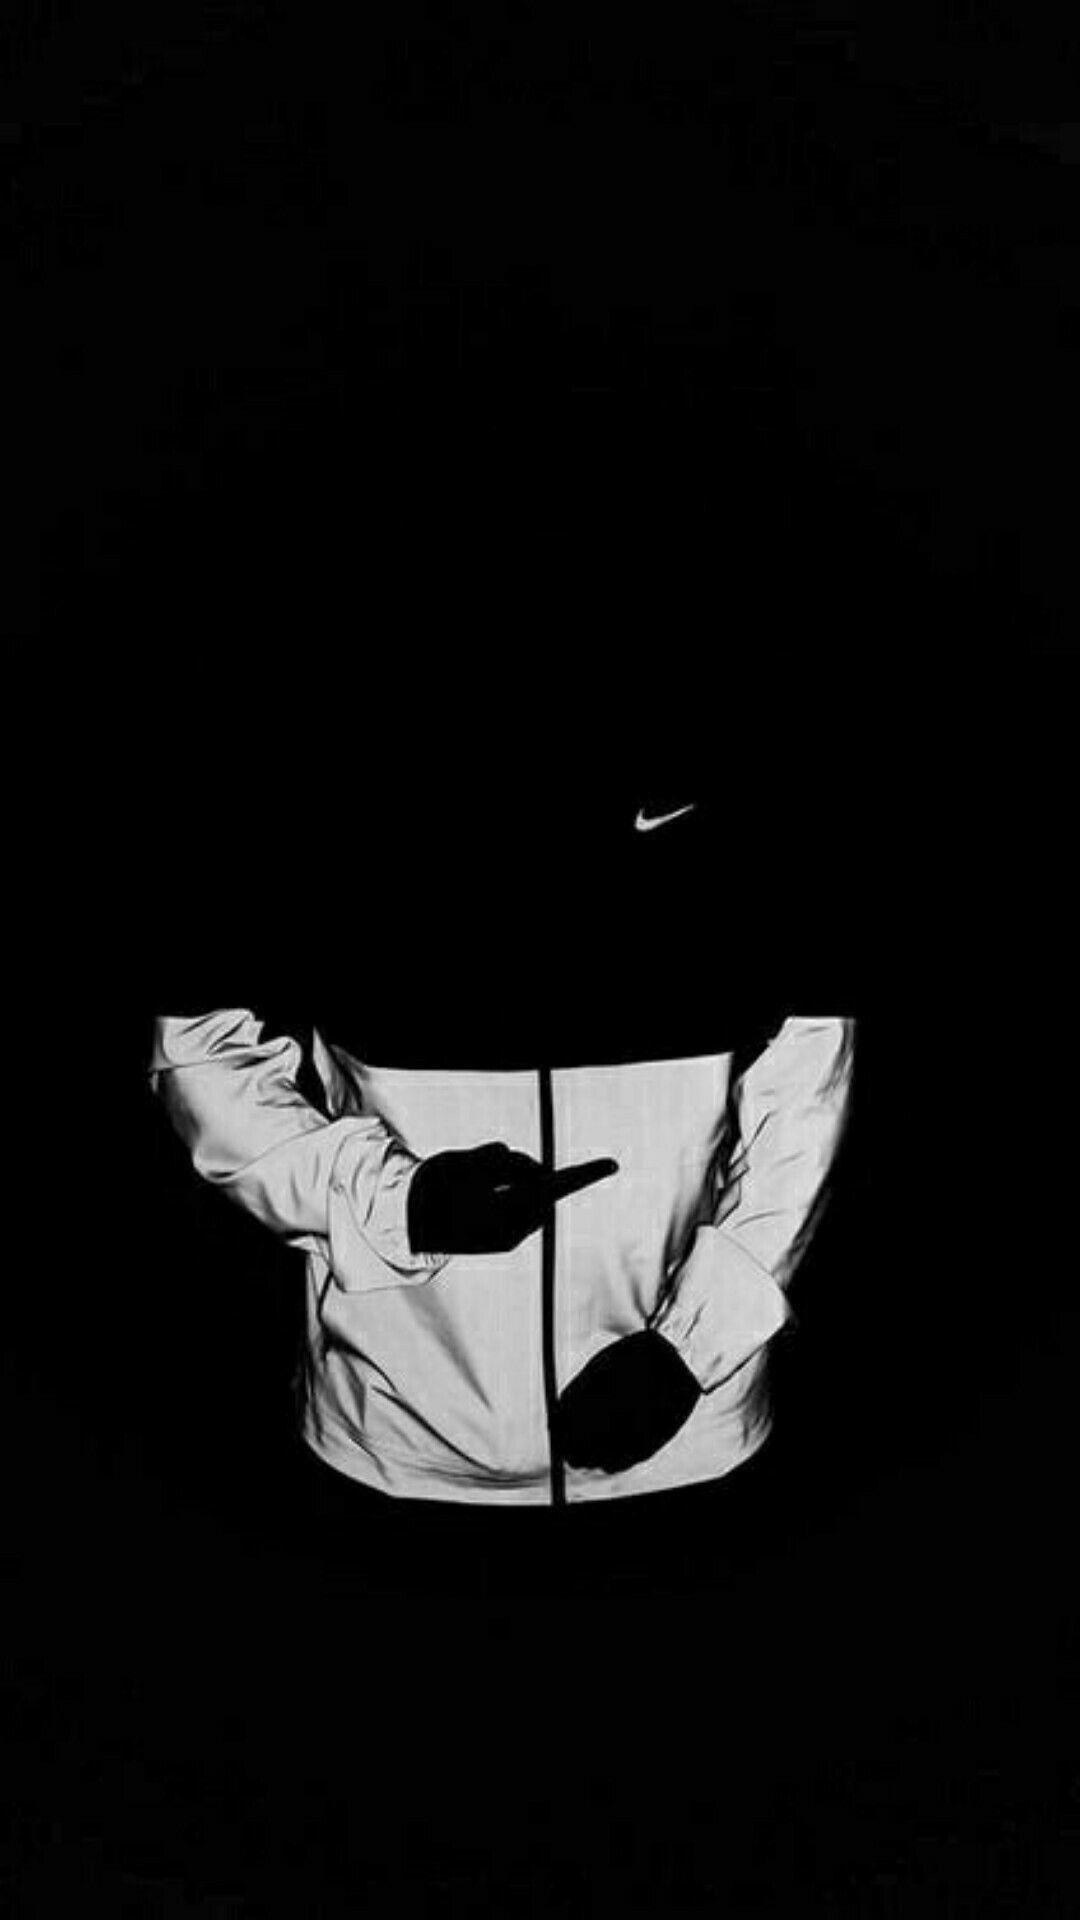 Hình nền Nike đen trắng 1080x1920